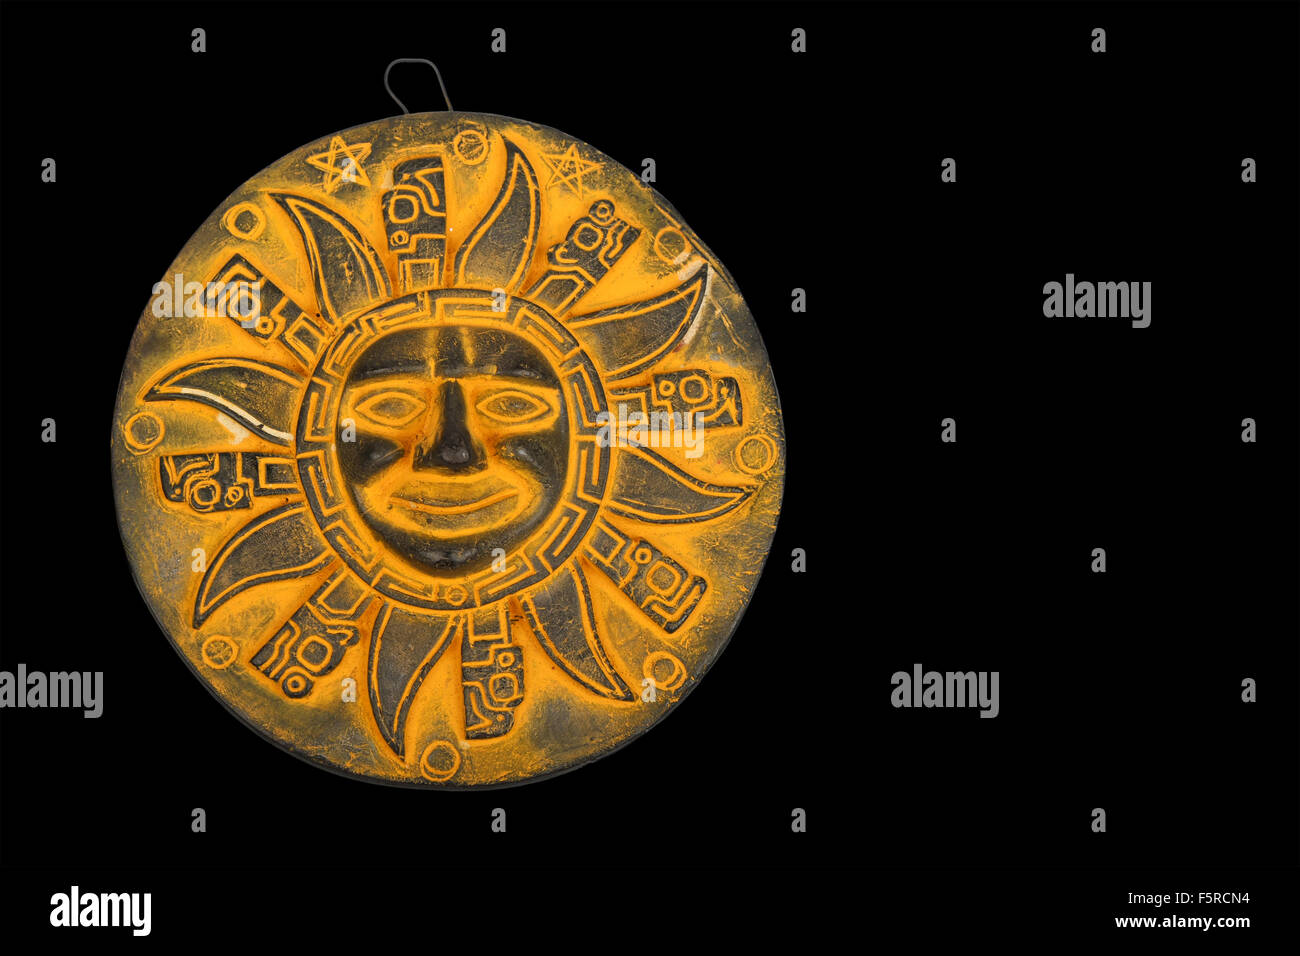 Traditionnel mexicain en céramique jaune symbole de soleil souvenir plaque isolé sur fond noir Banque D'Images